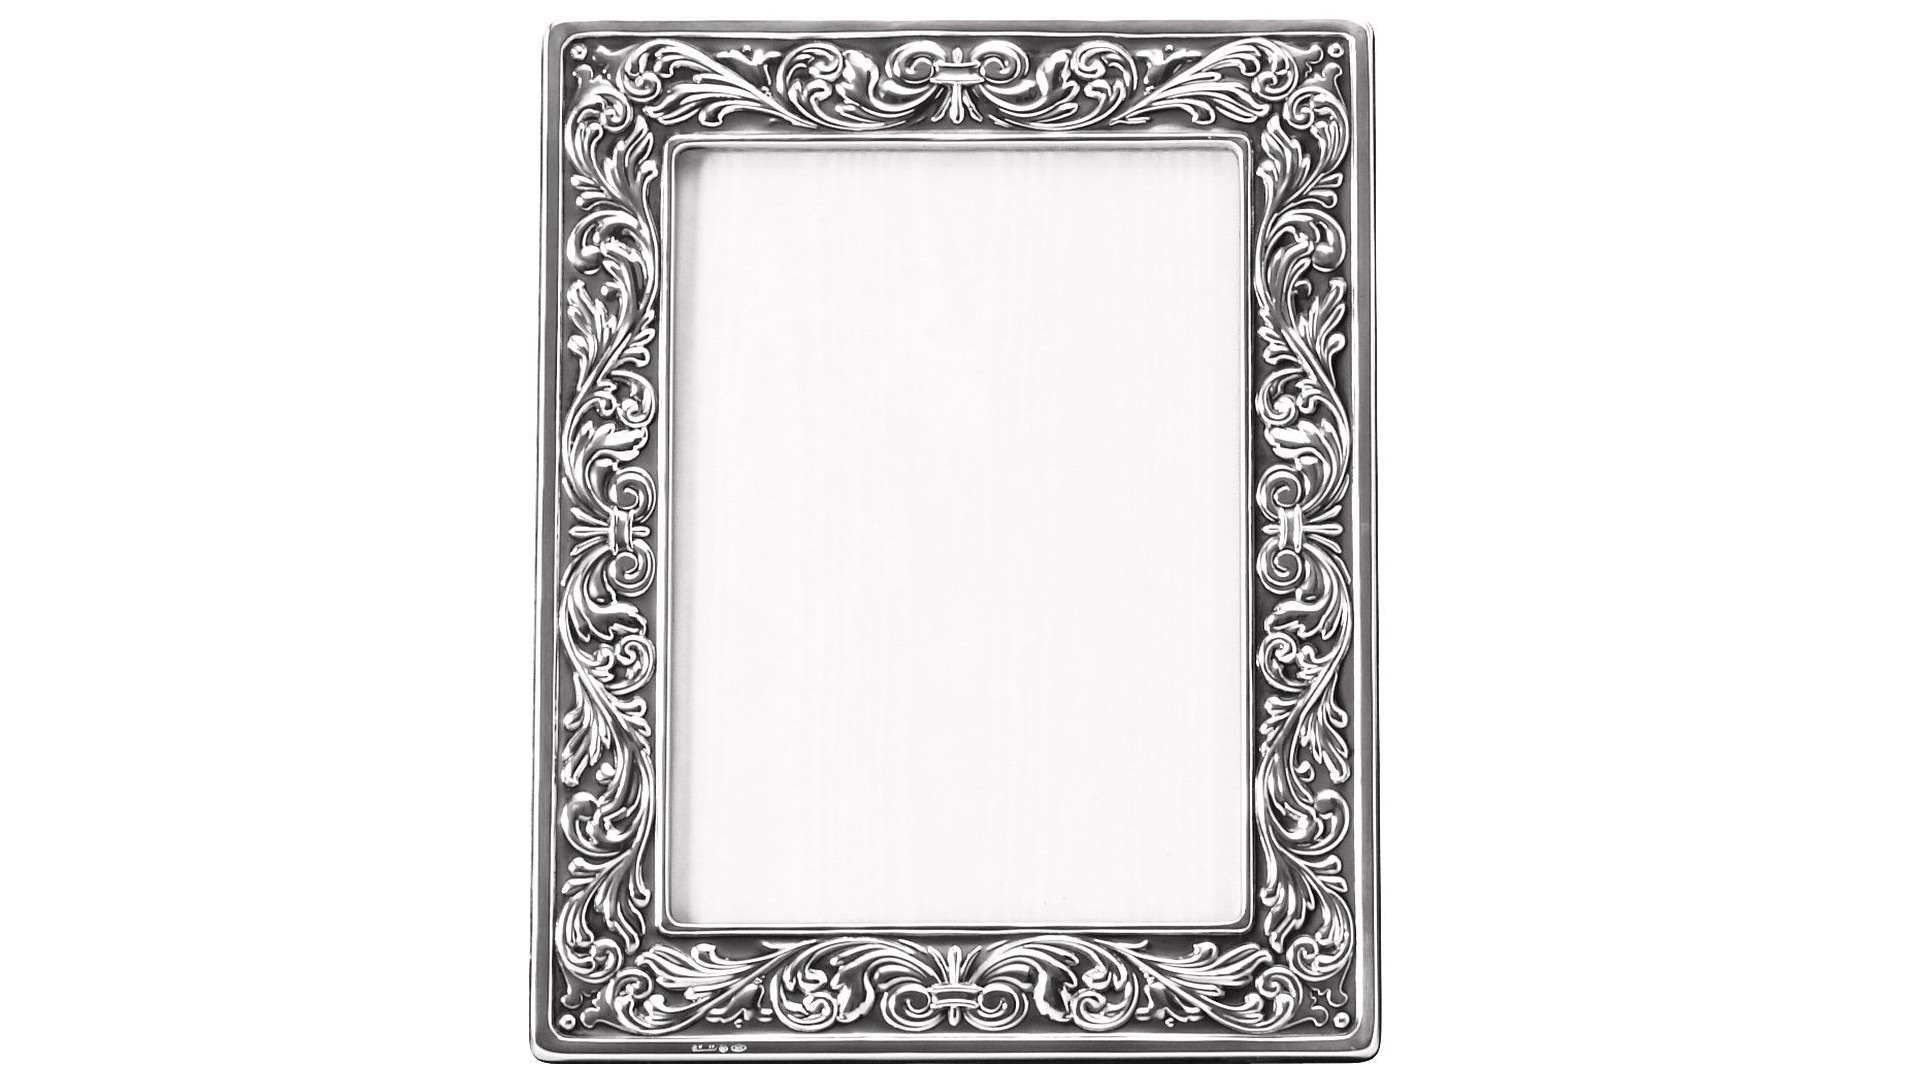 Рамка для фото Schiavon Барокко 18х24 см, серебро 925пр